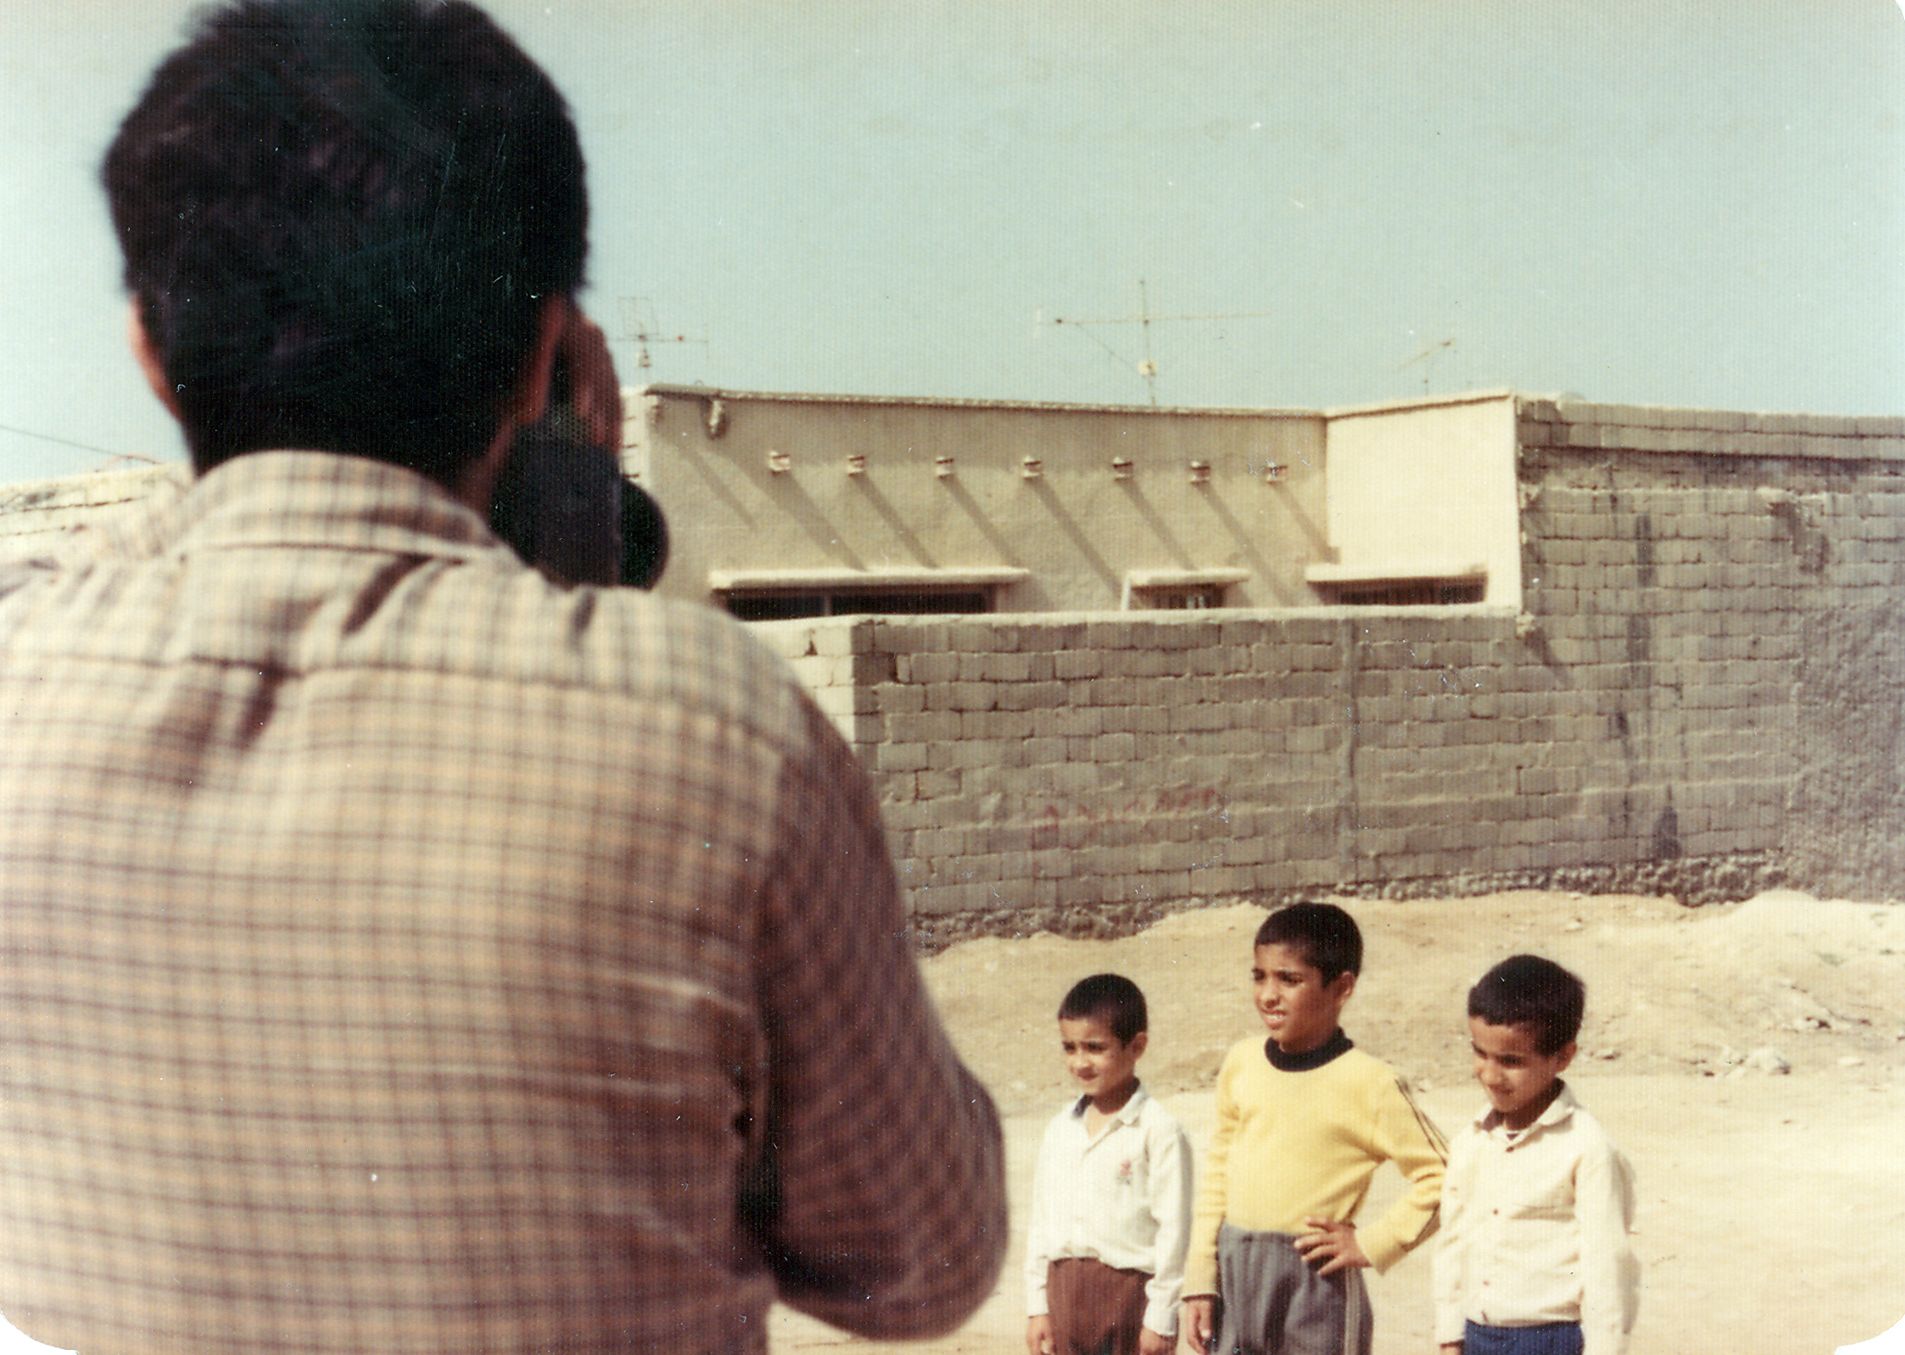 تصویری از علی غلامی، بازیگر سینما و تلویزیون در پشت صحنه یکی از آثارش